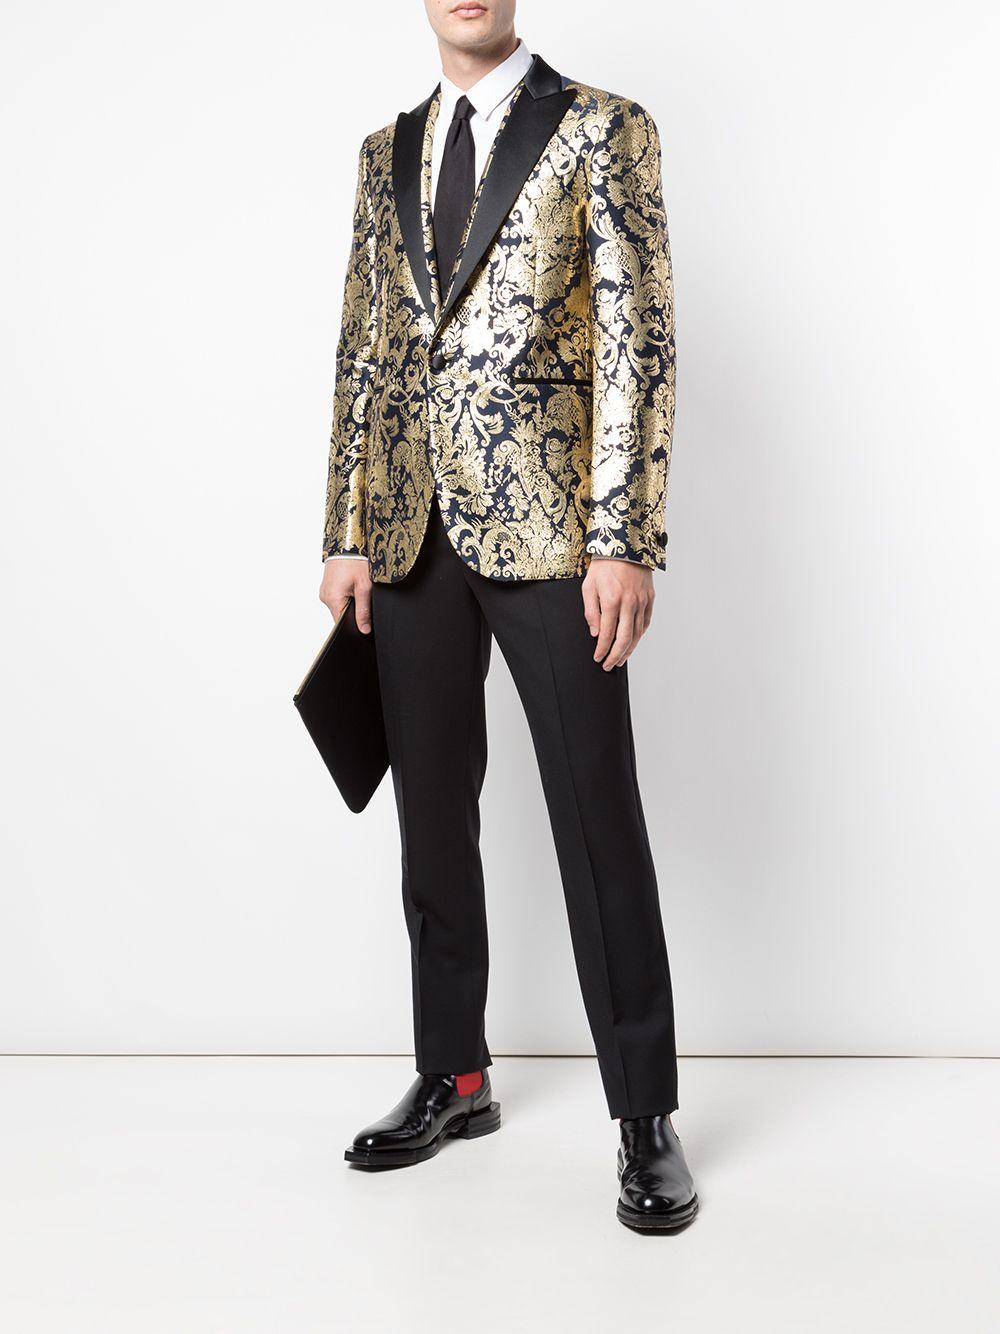 Versace Mens Navy Gold Metallic Barocco Brocade Blazer/ Dinner Jacket

Canalisez l'extraverti qui est en vous avec ce blazer en brocart Barocco de Versace. Confectionnée à partir d'un mélange de soie et de coton, cette pièce remarquable a été conçue